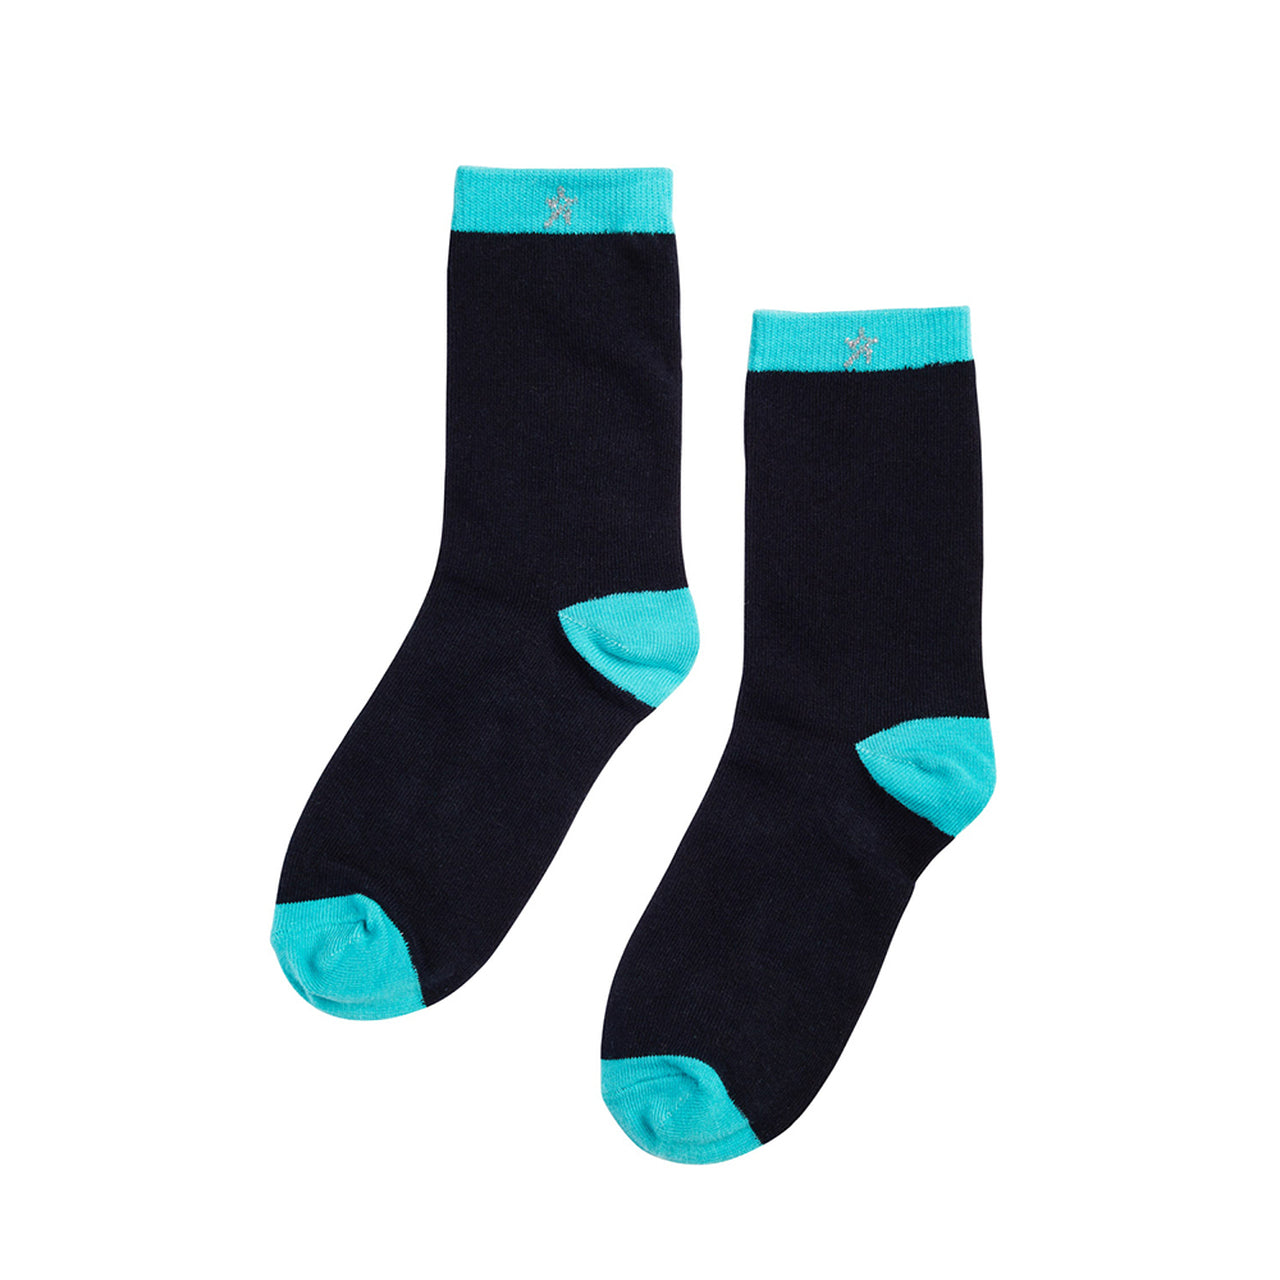 Swing Out Sister 2 Pack Socks - Icelandic Blue